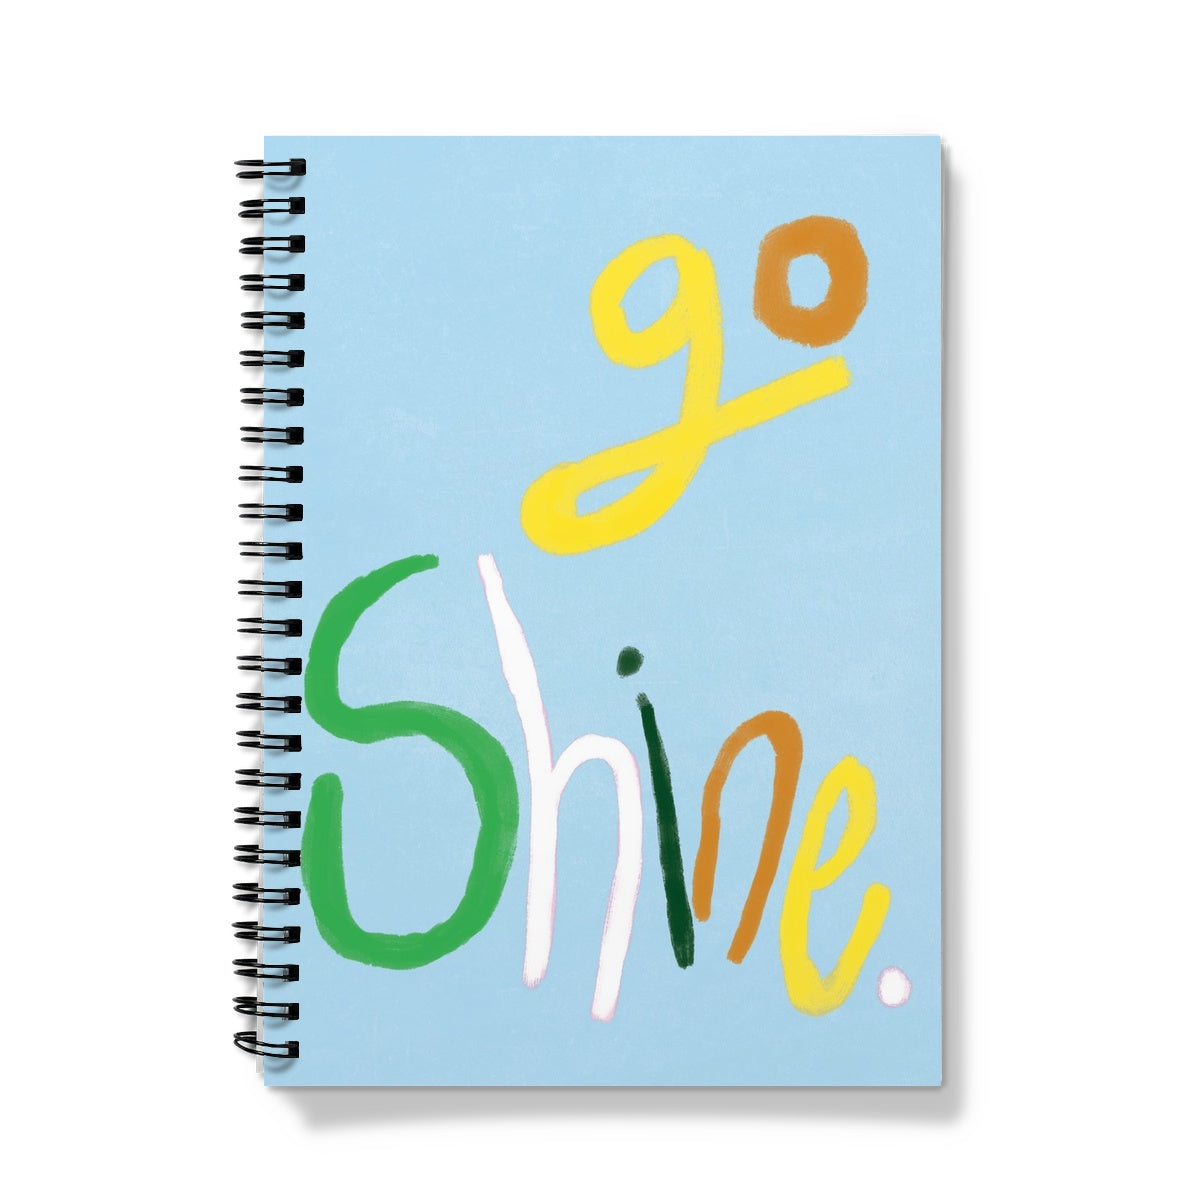 Go Shine Print - Blue Notebook